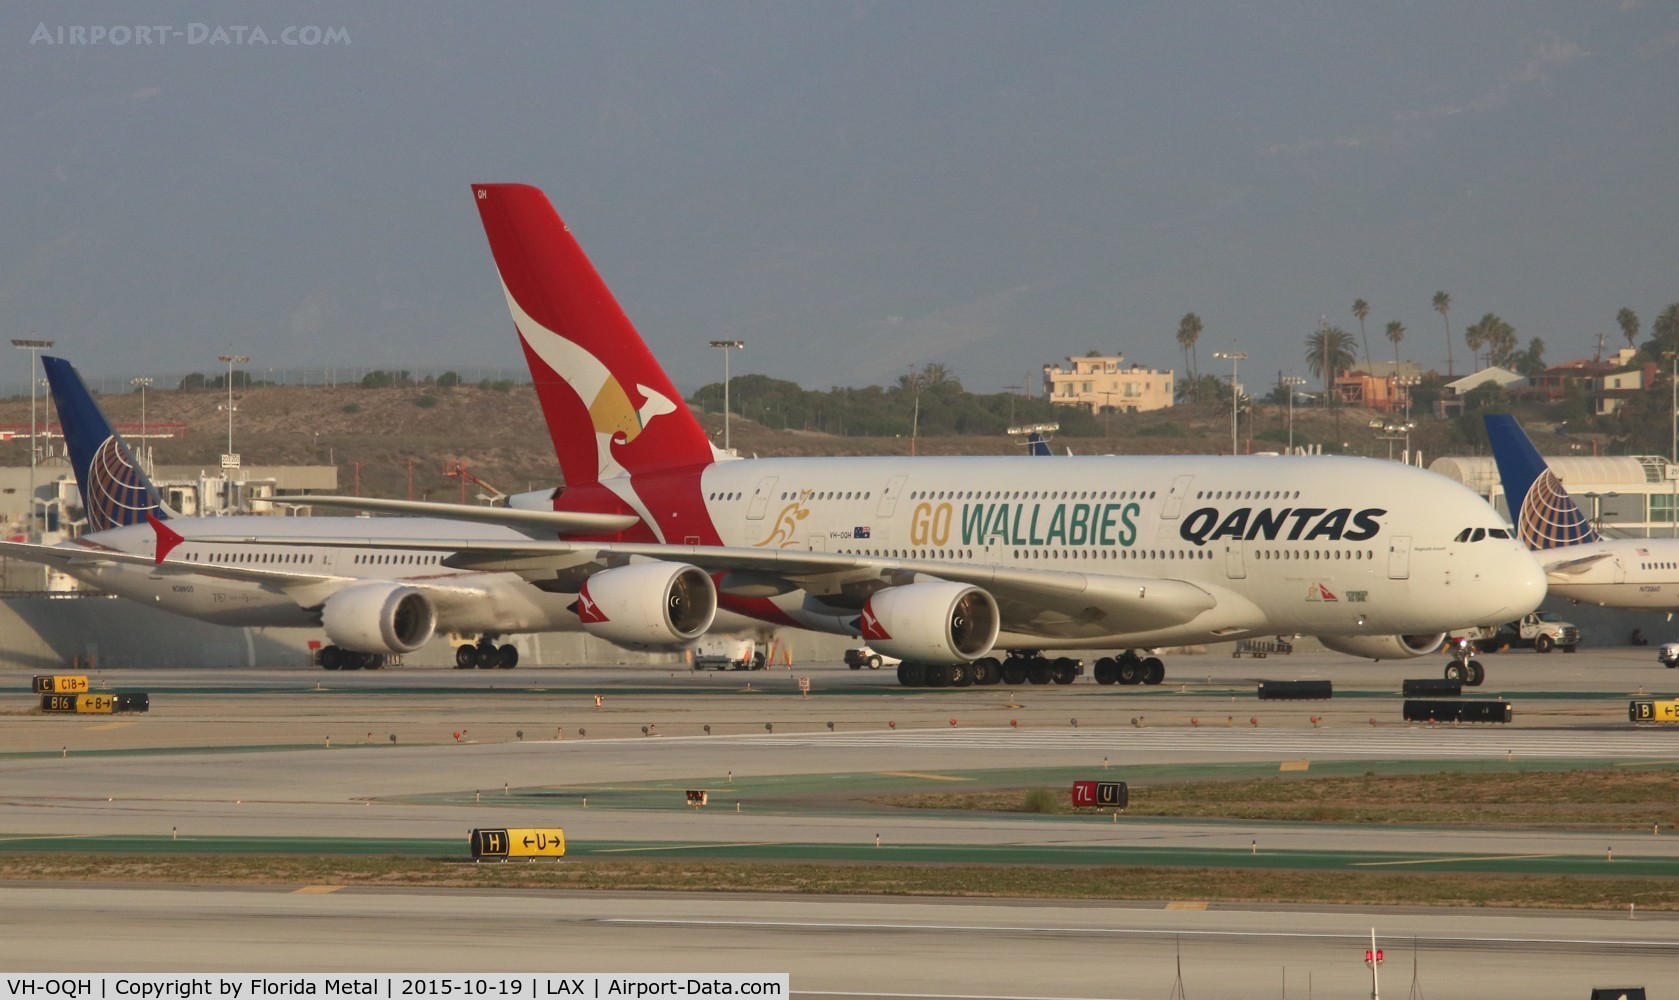 VH-OQH, 2009 Airbus A380-842 C/N 050, Qantas Wallabies A380